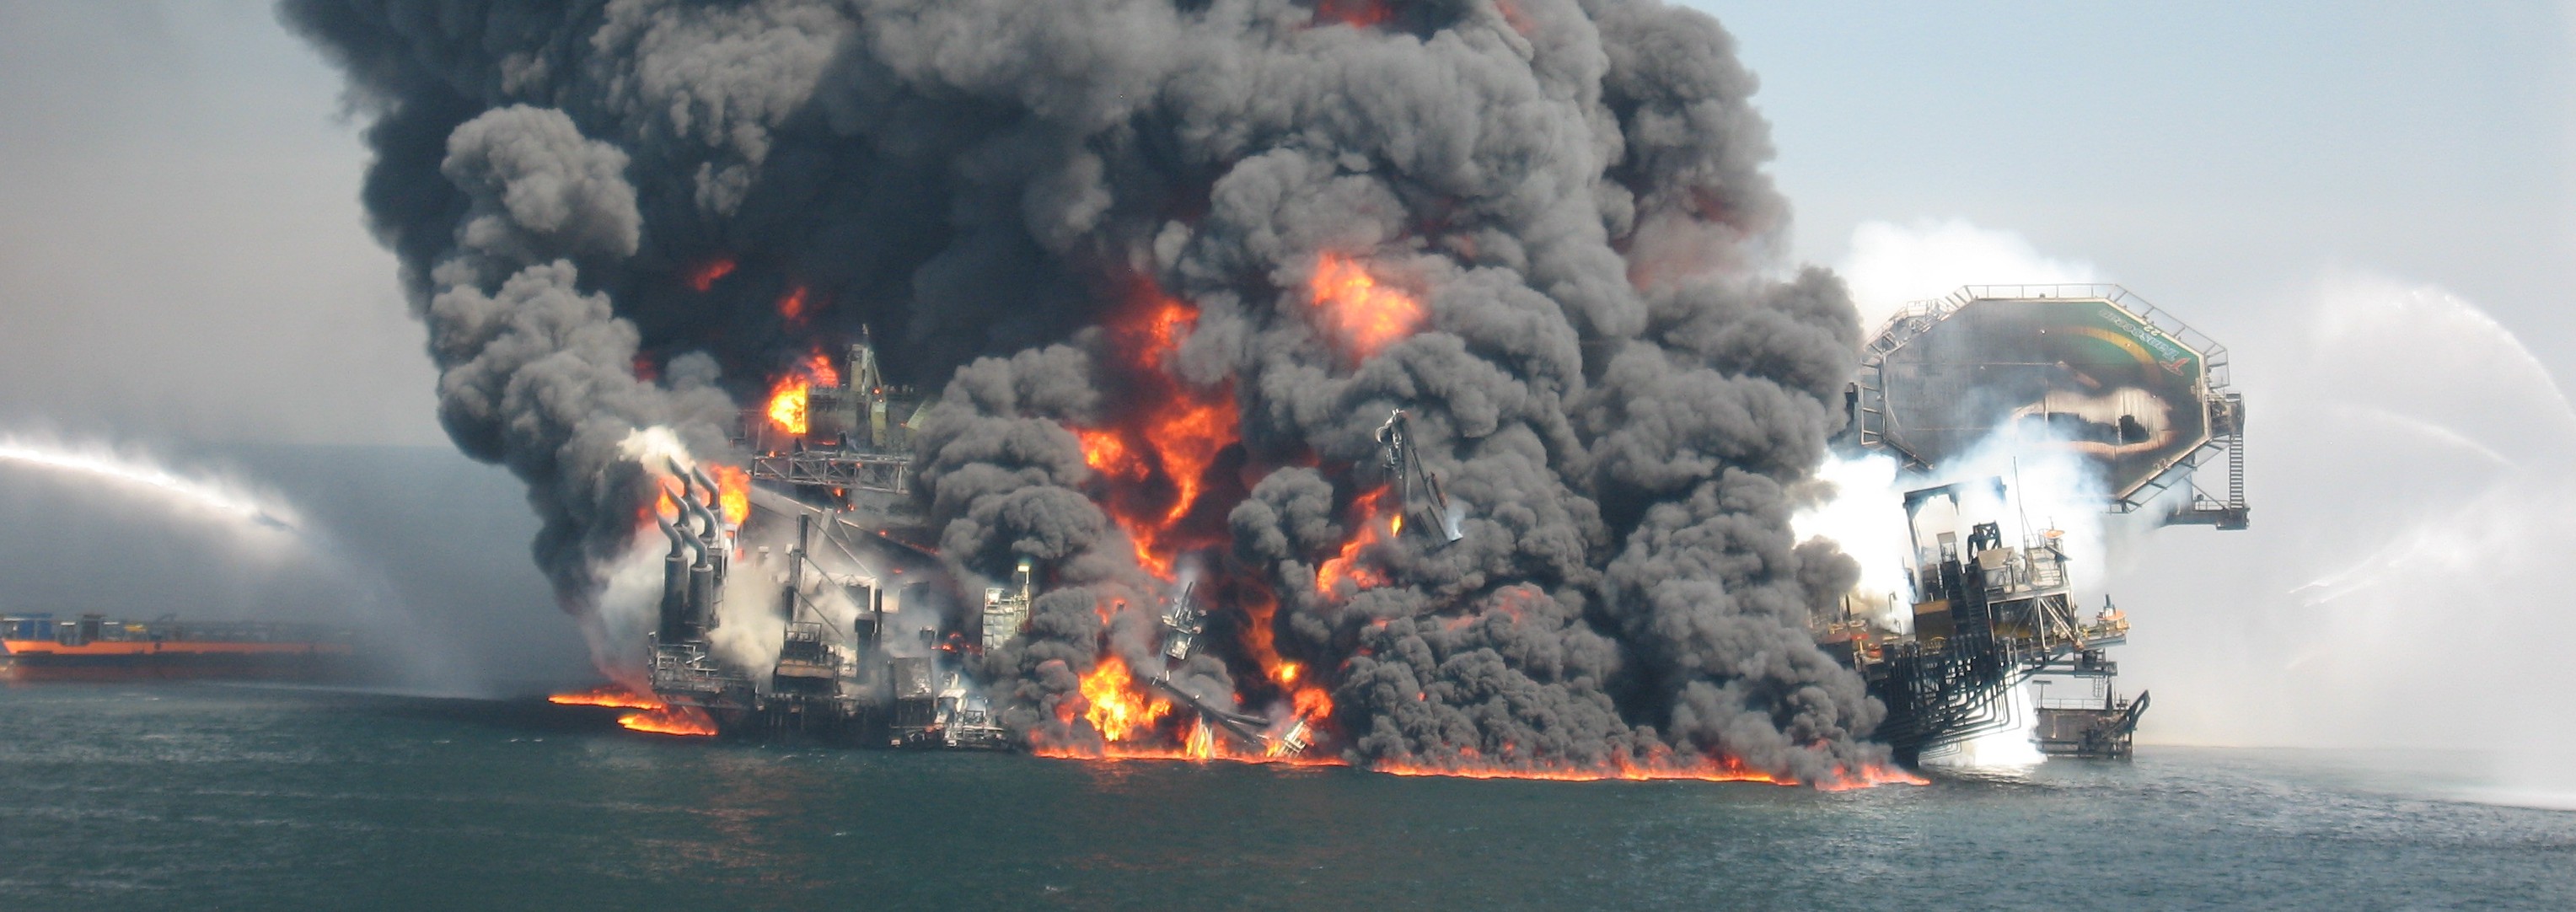 Аварии на буровой. Глубоководный Горизонт 2010. Deepwater Horizon катастрофа. Взрыв платформы Deepwater Horizon. Взрыв нефтяной платформы Deepwater Horizon - 20 апреля 2010 года.